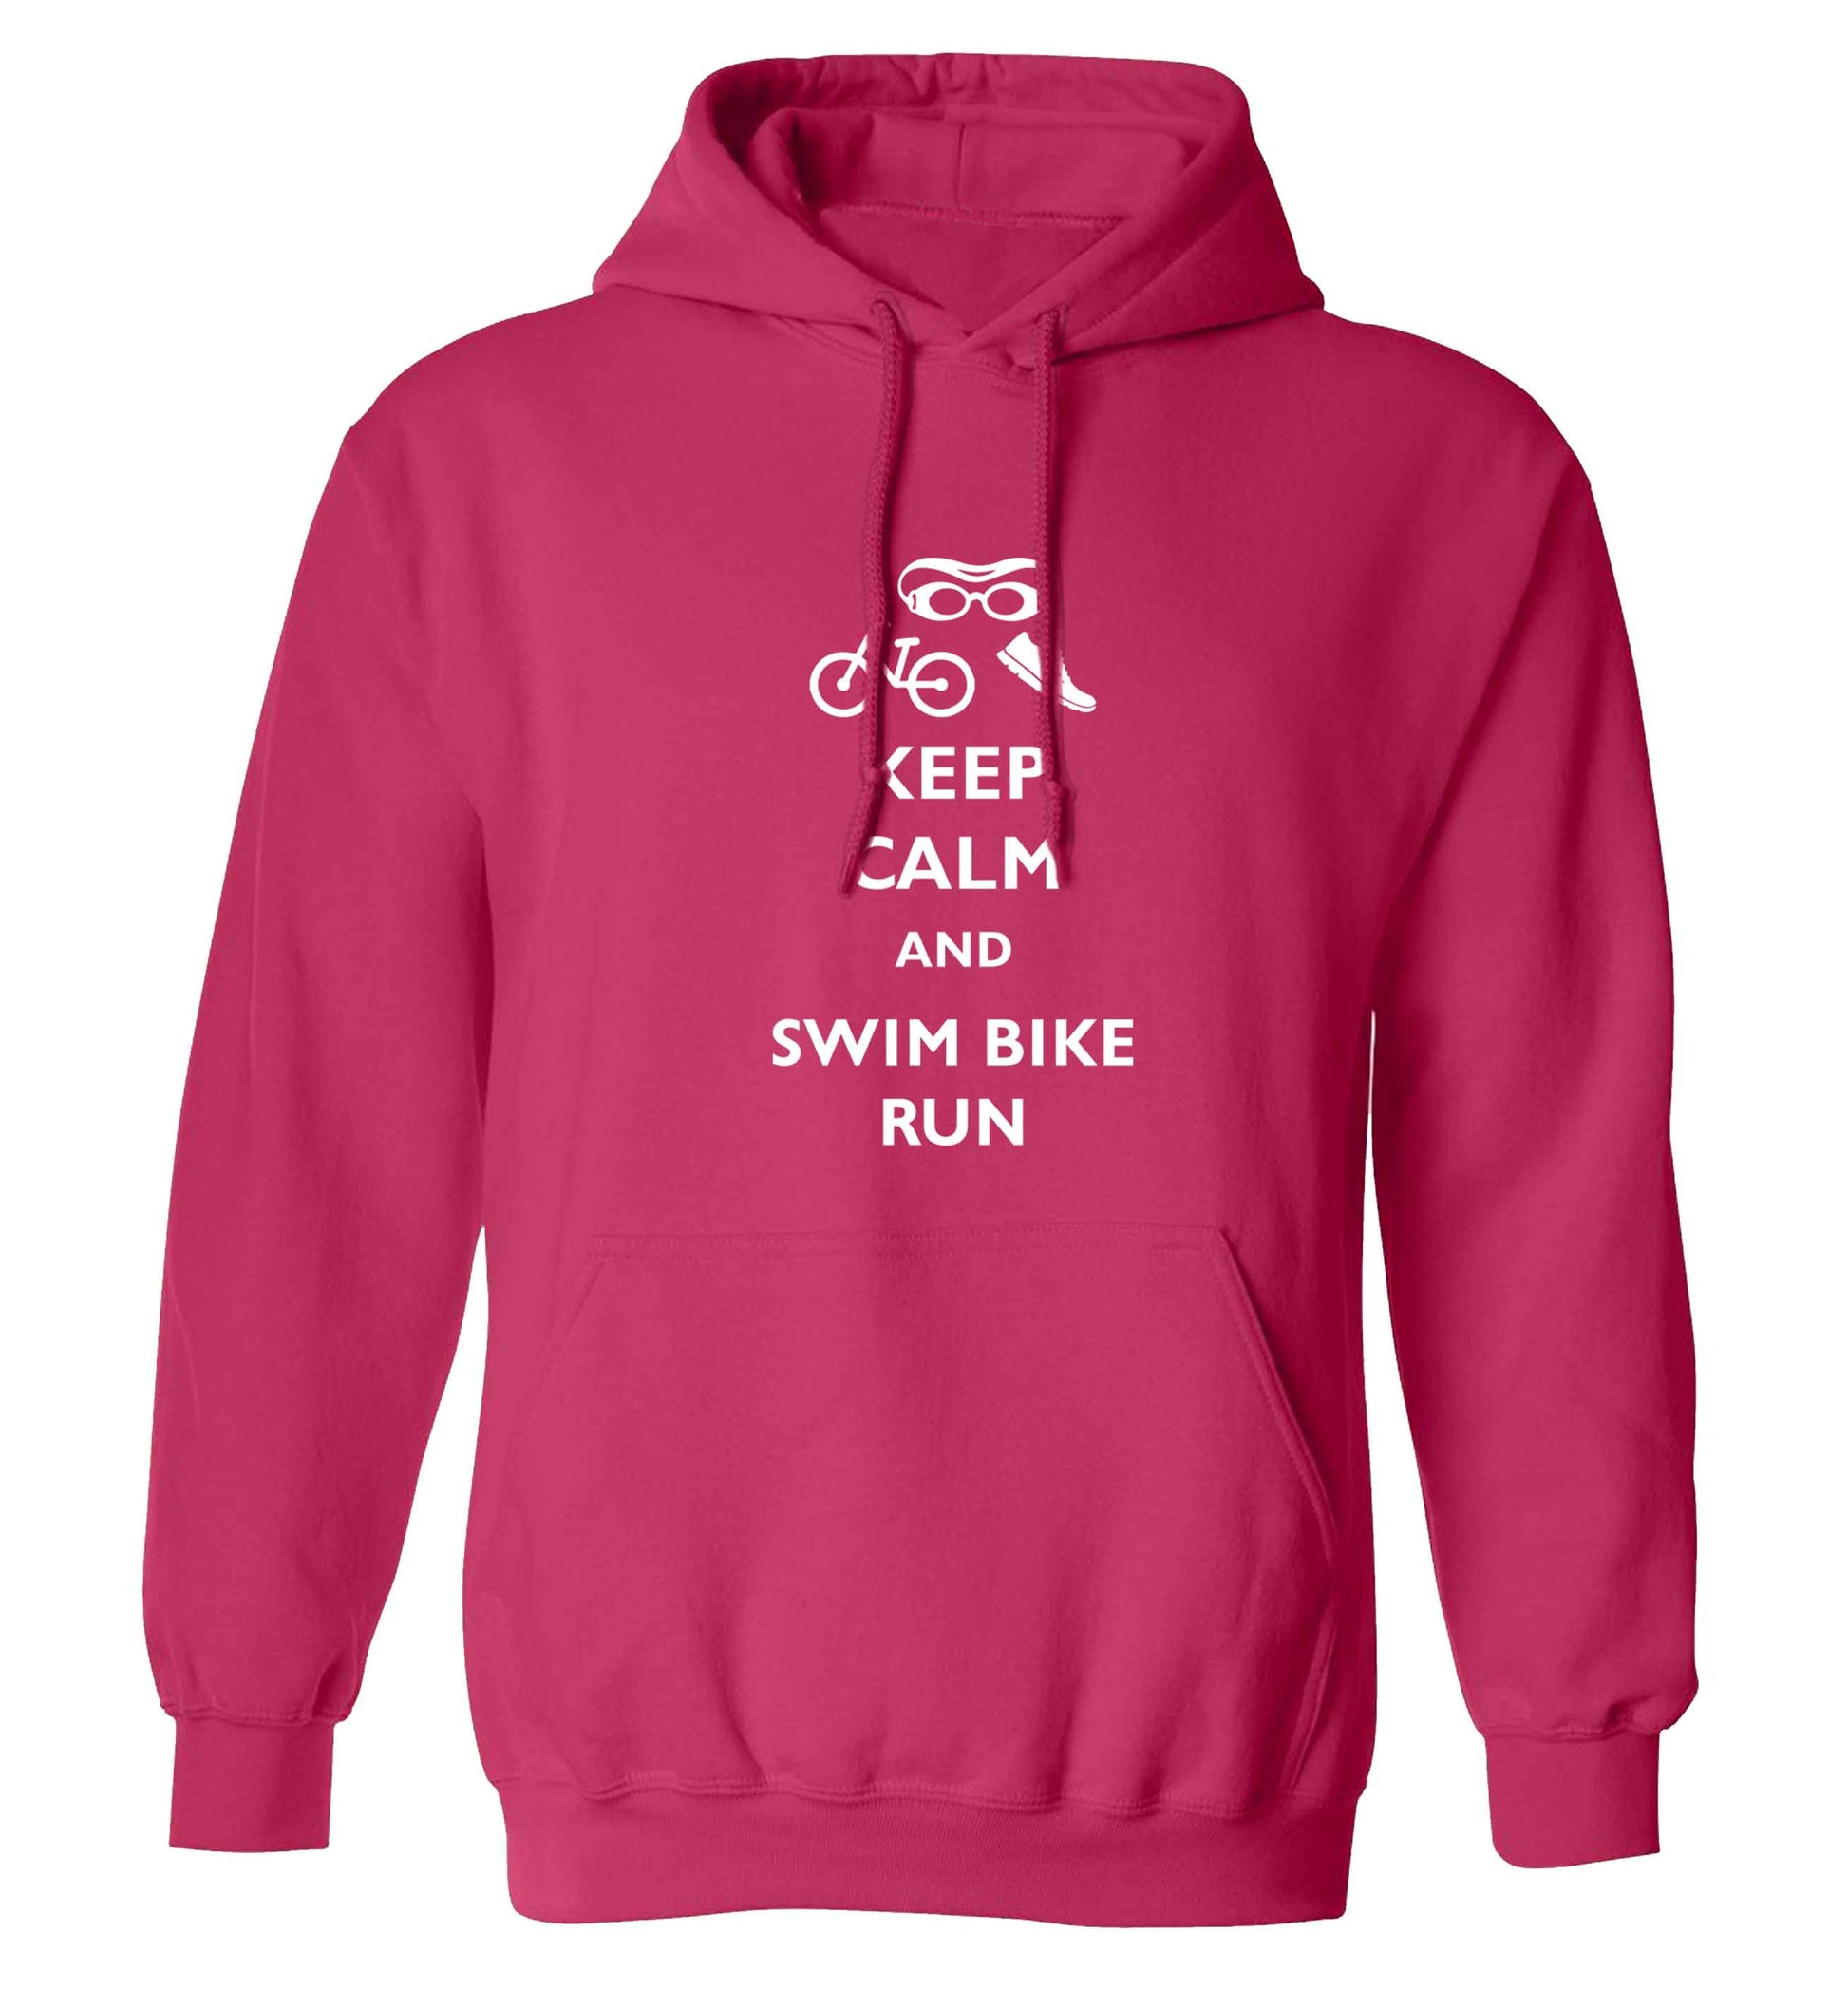 Keep calm and swim bike run adults unisex pink hoodie 2XL